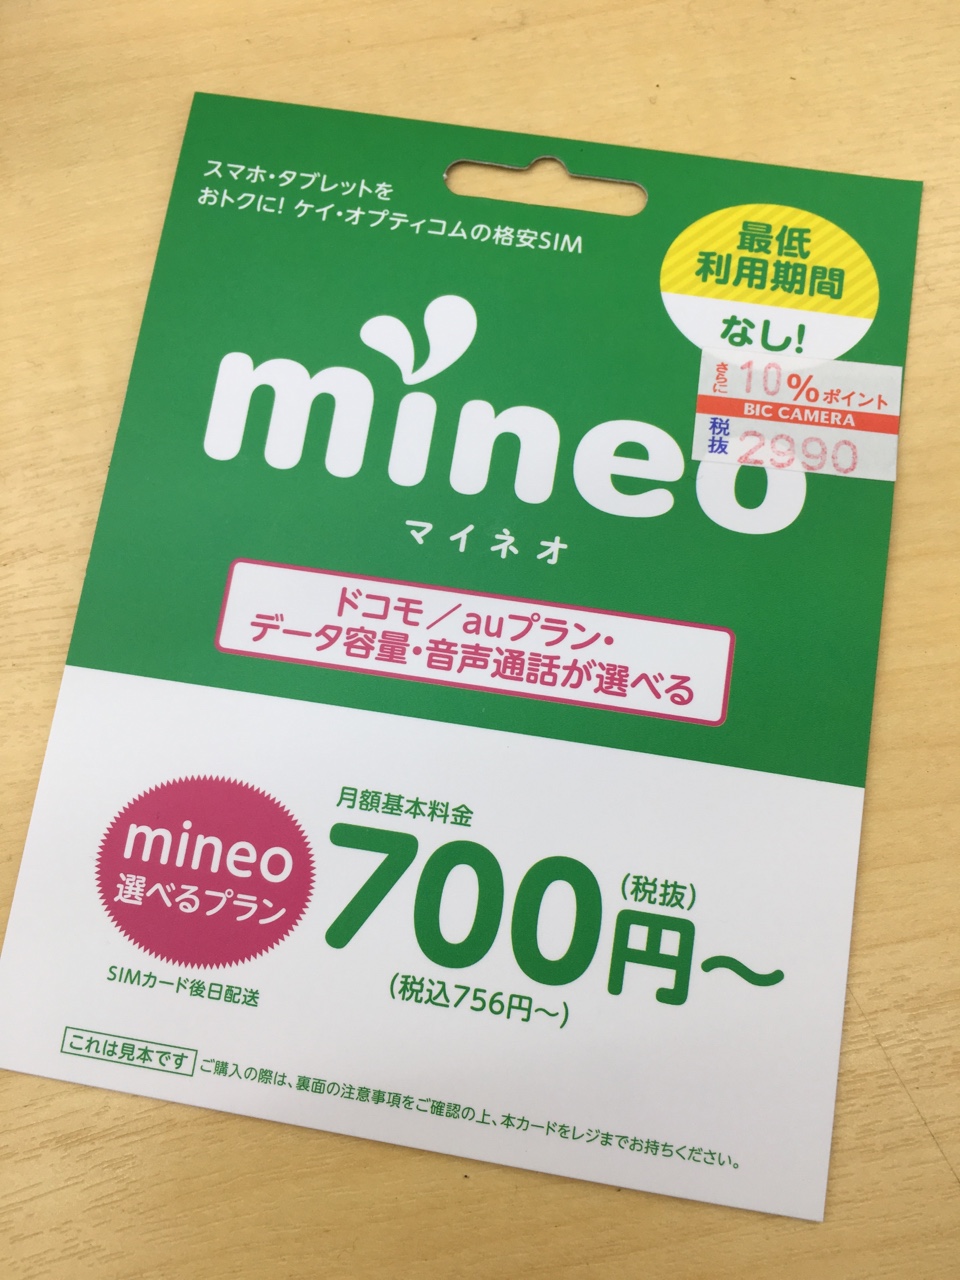 mineoの見本カード